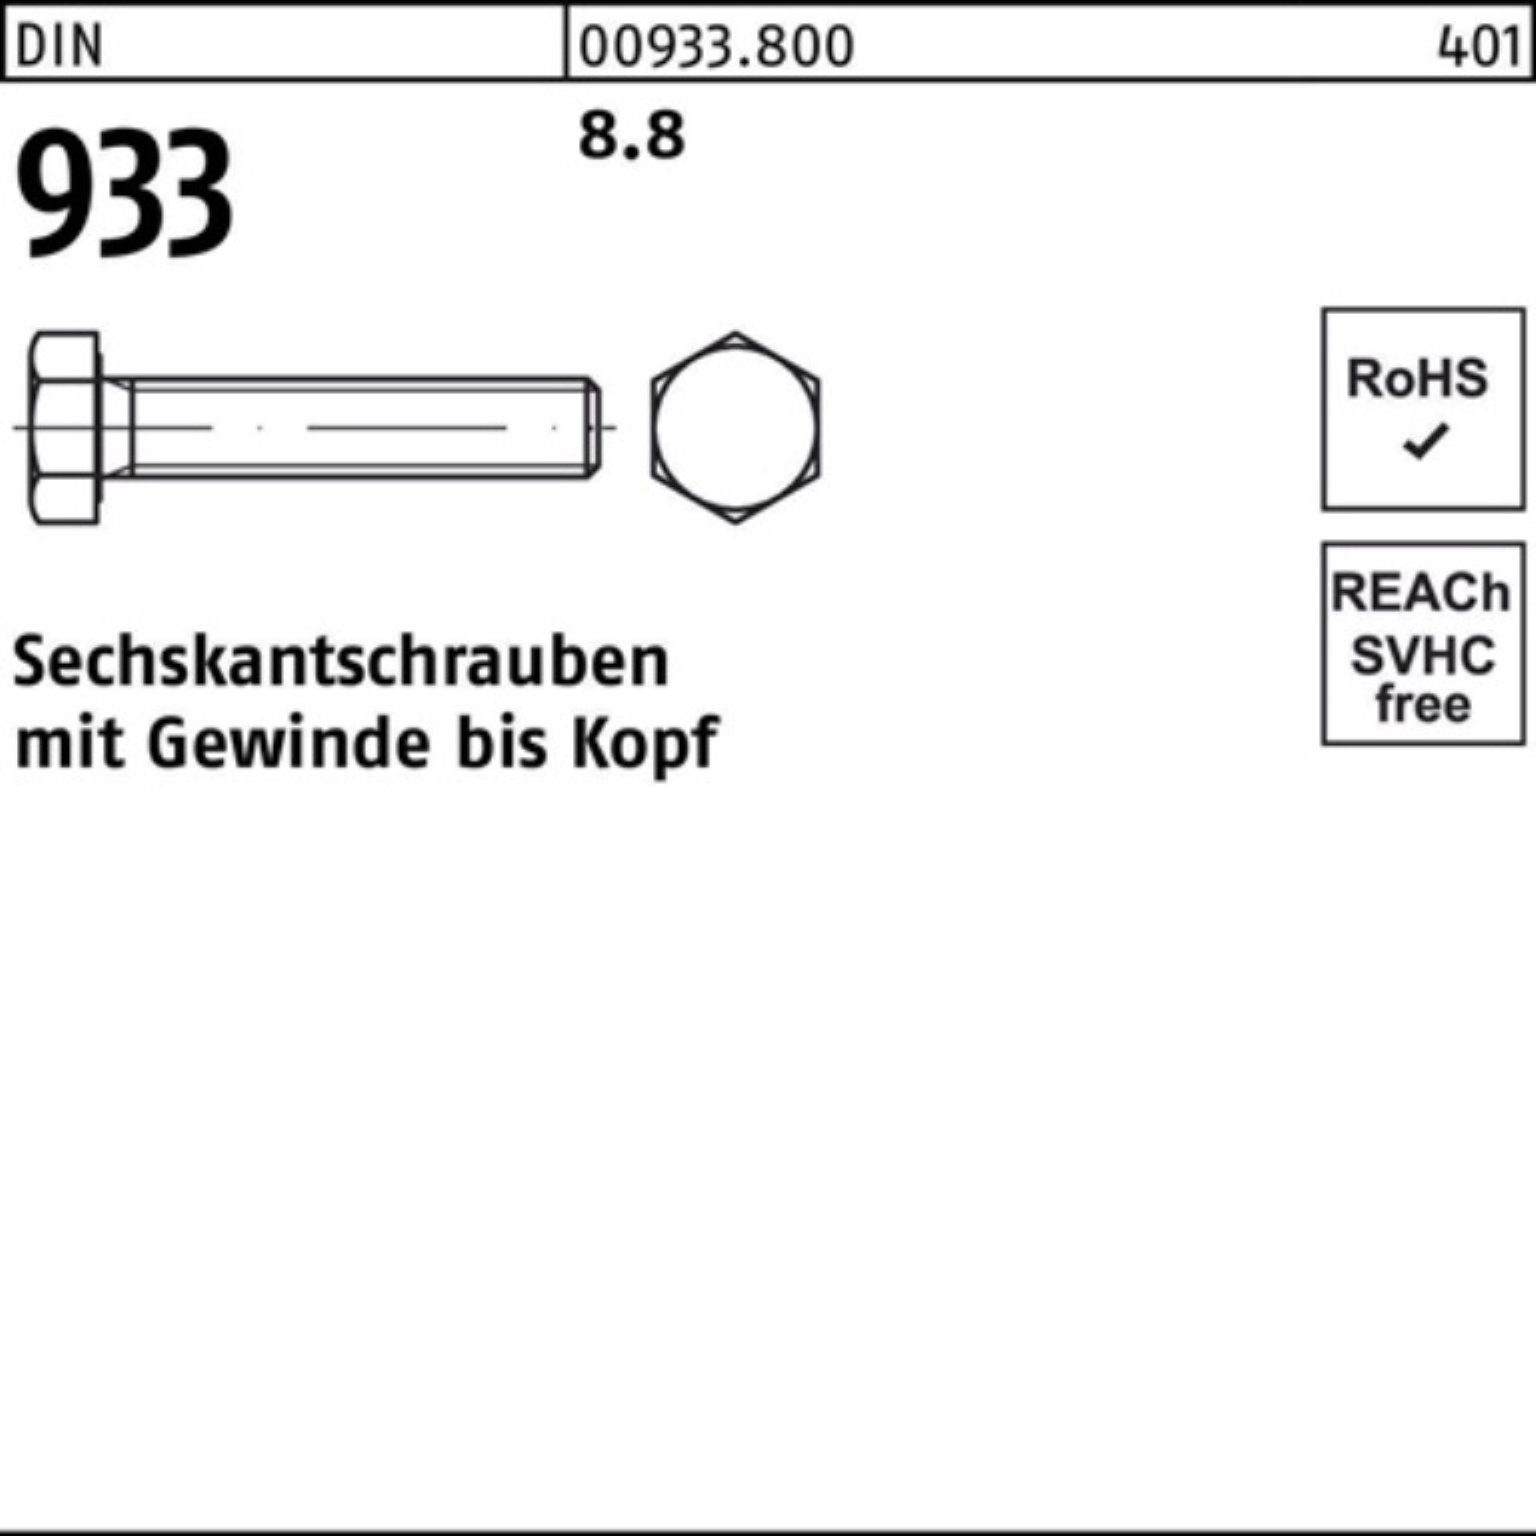 Sechskantschraube 933 M8x Stück 933 Reyher 200er 8.8 Pack 200 DIN VG 16 DIN Sechskantschraube